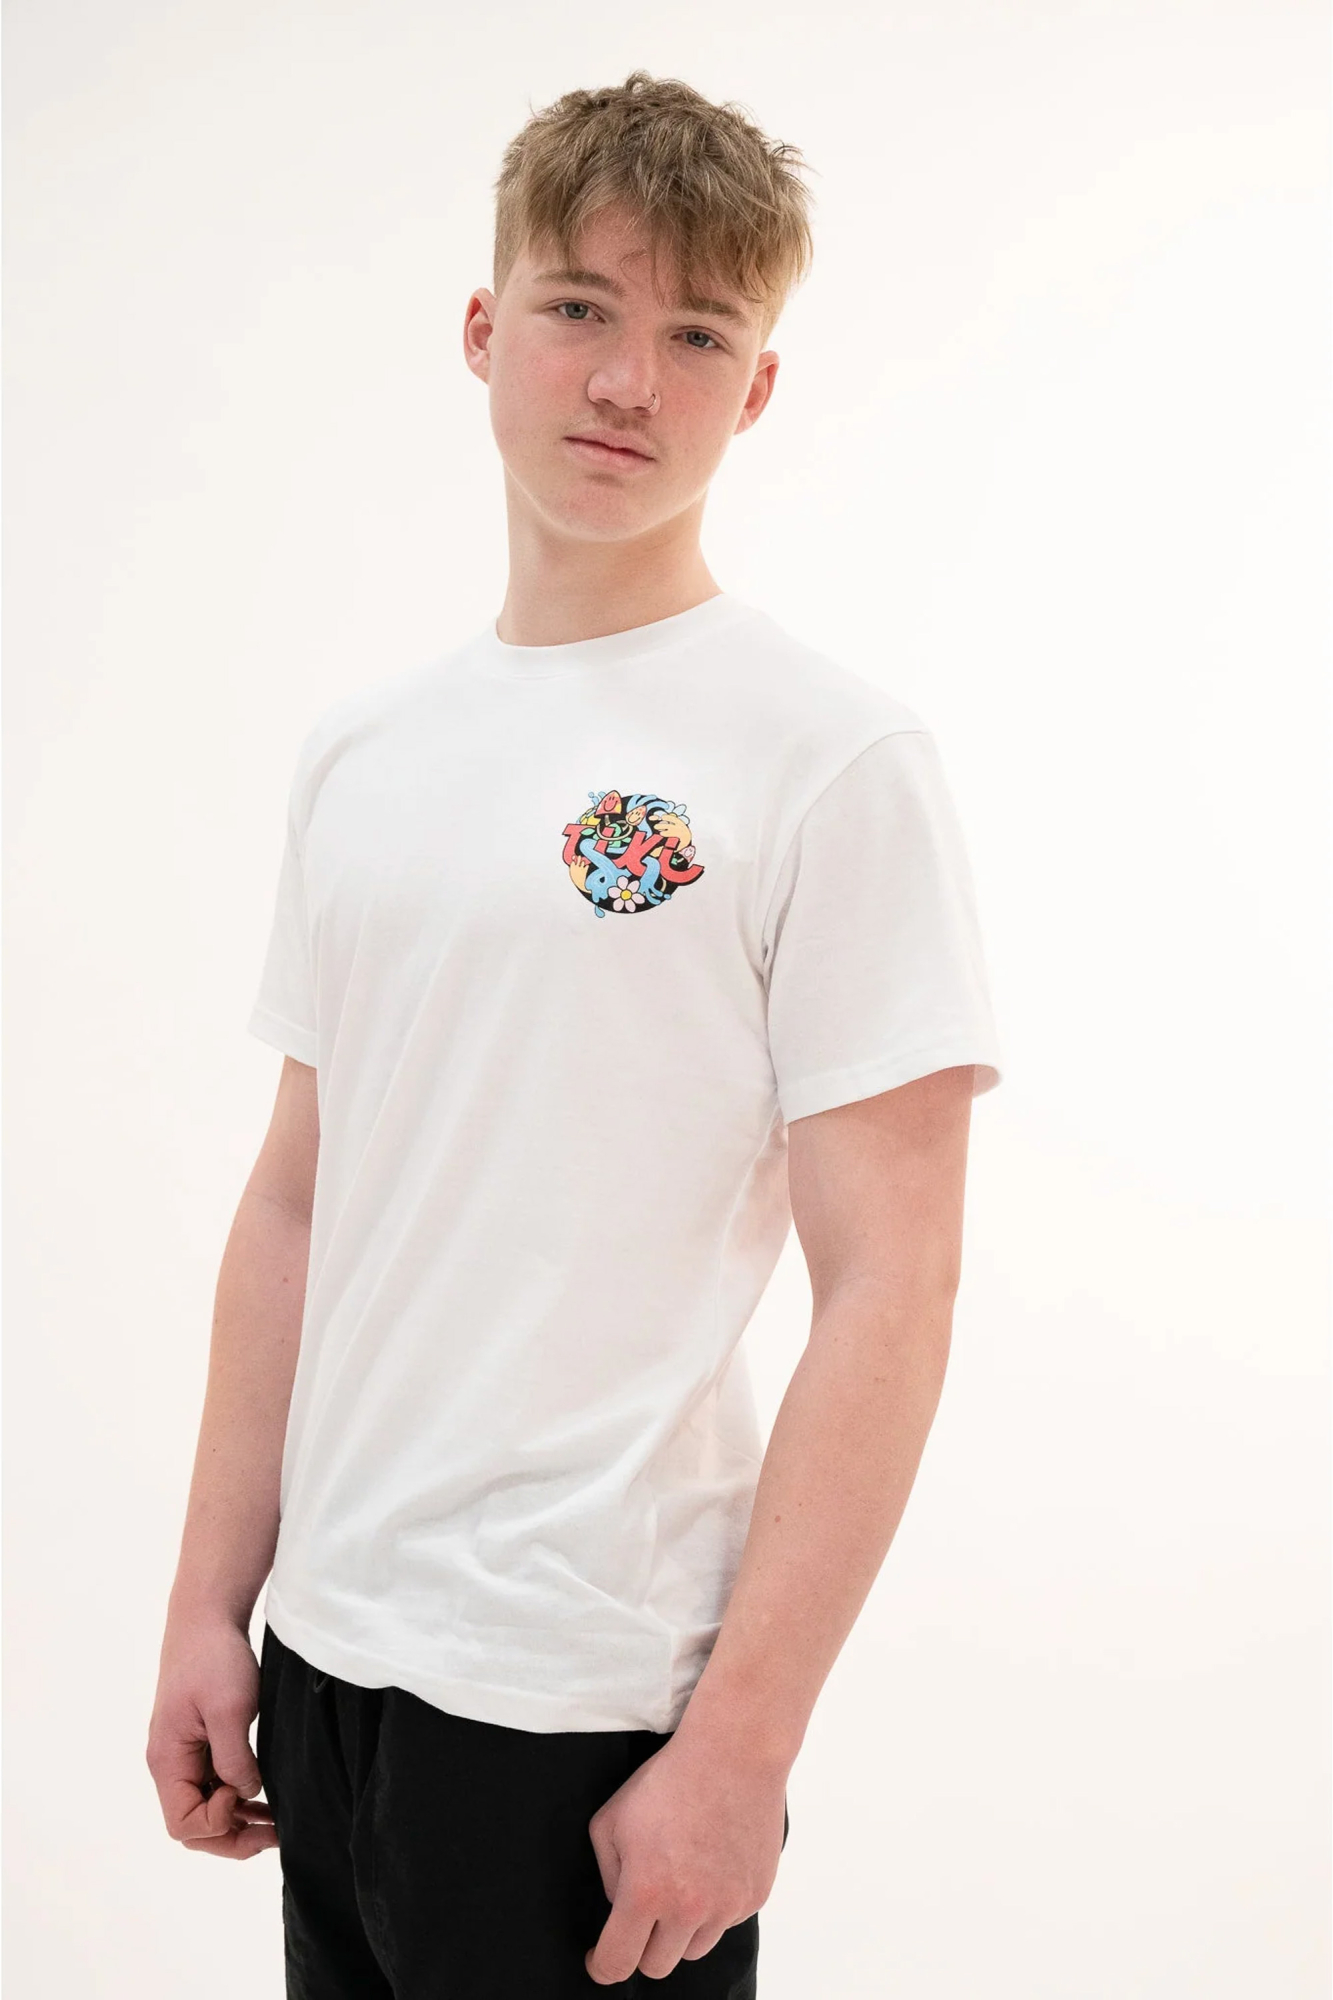 Tiki Unisex Life Short Sleeve T-shirt White - Size: Medium